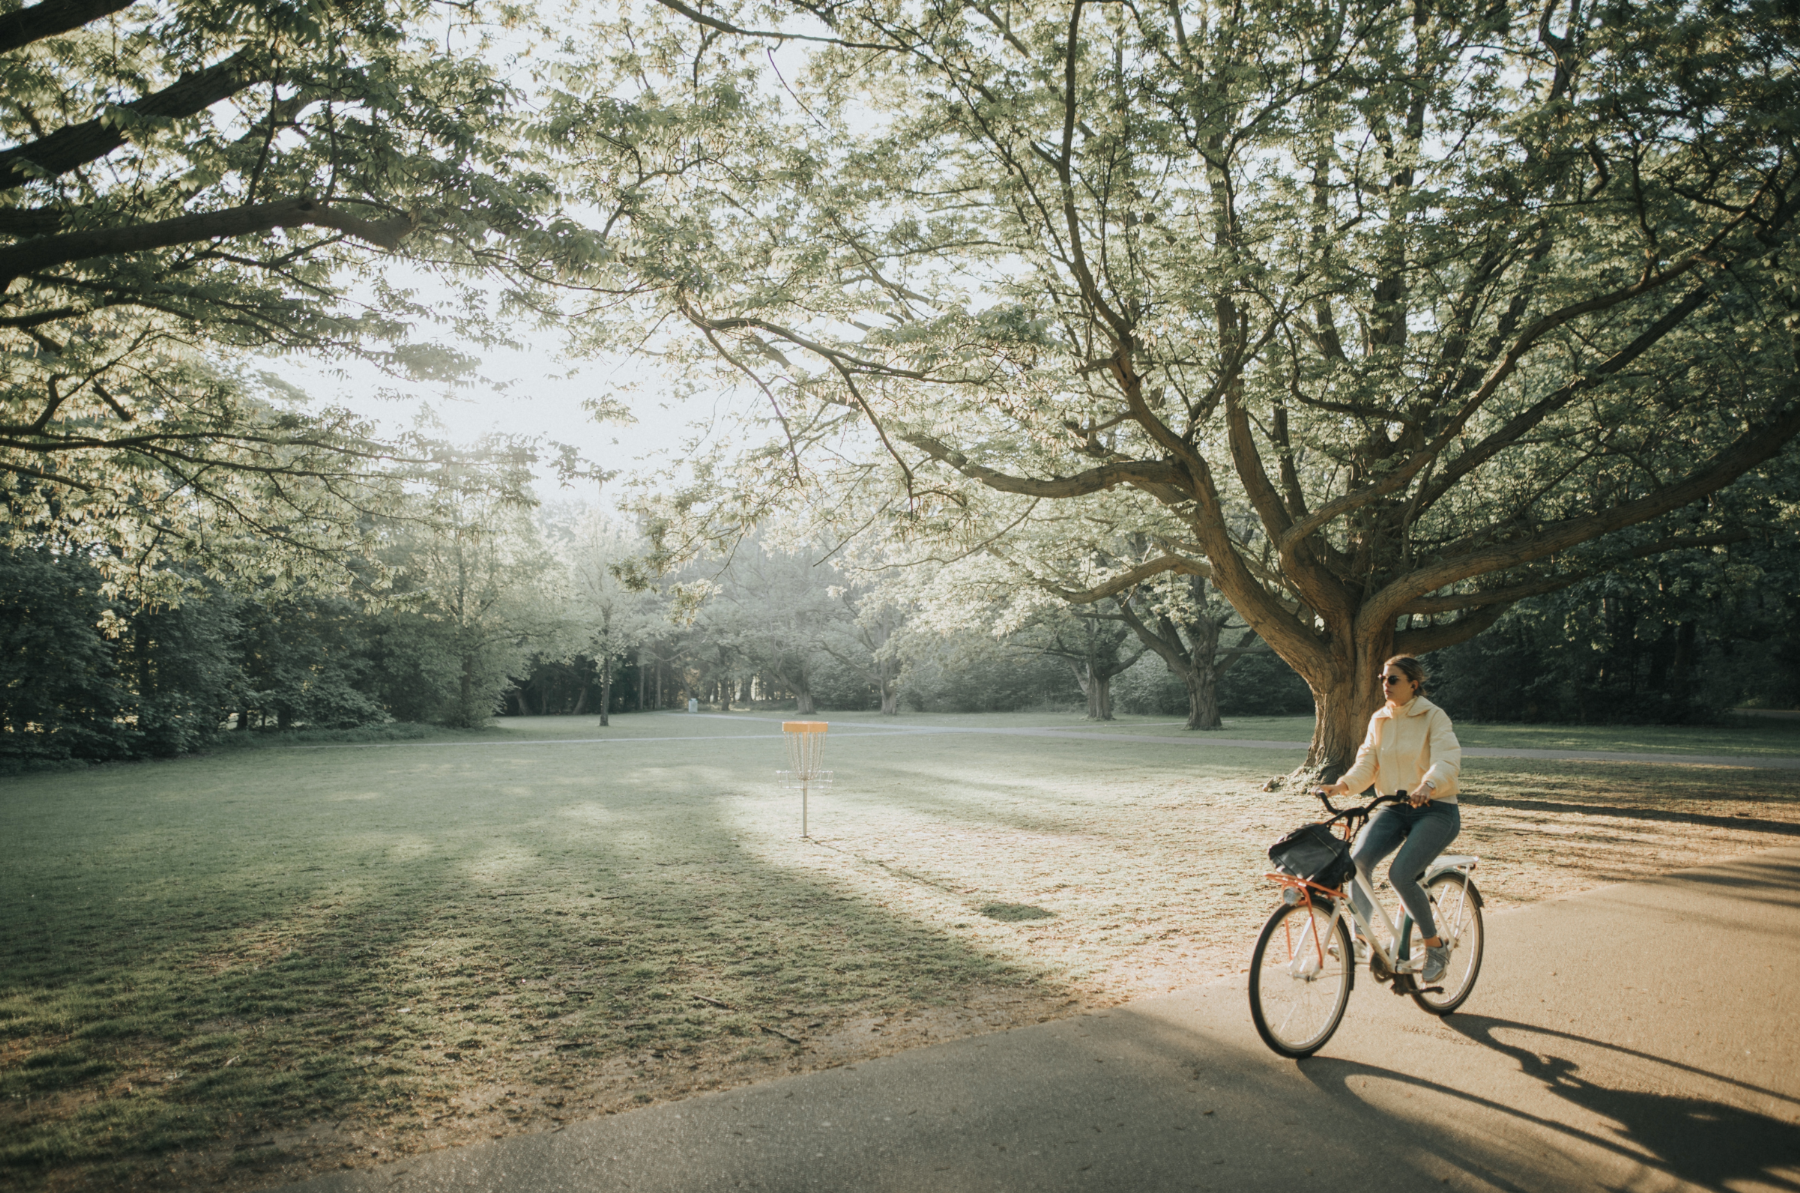 Riding a bicycle through a park.